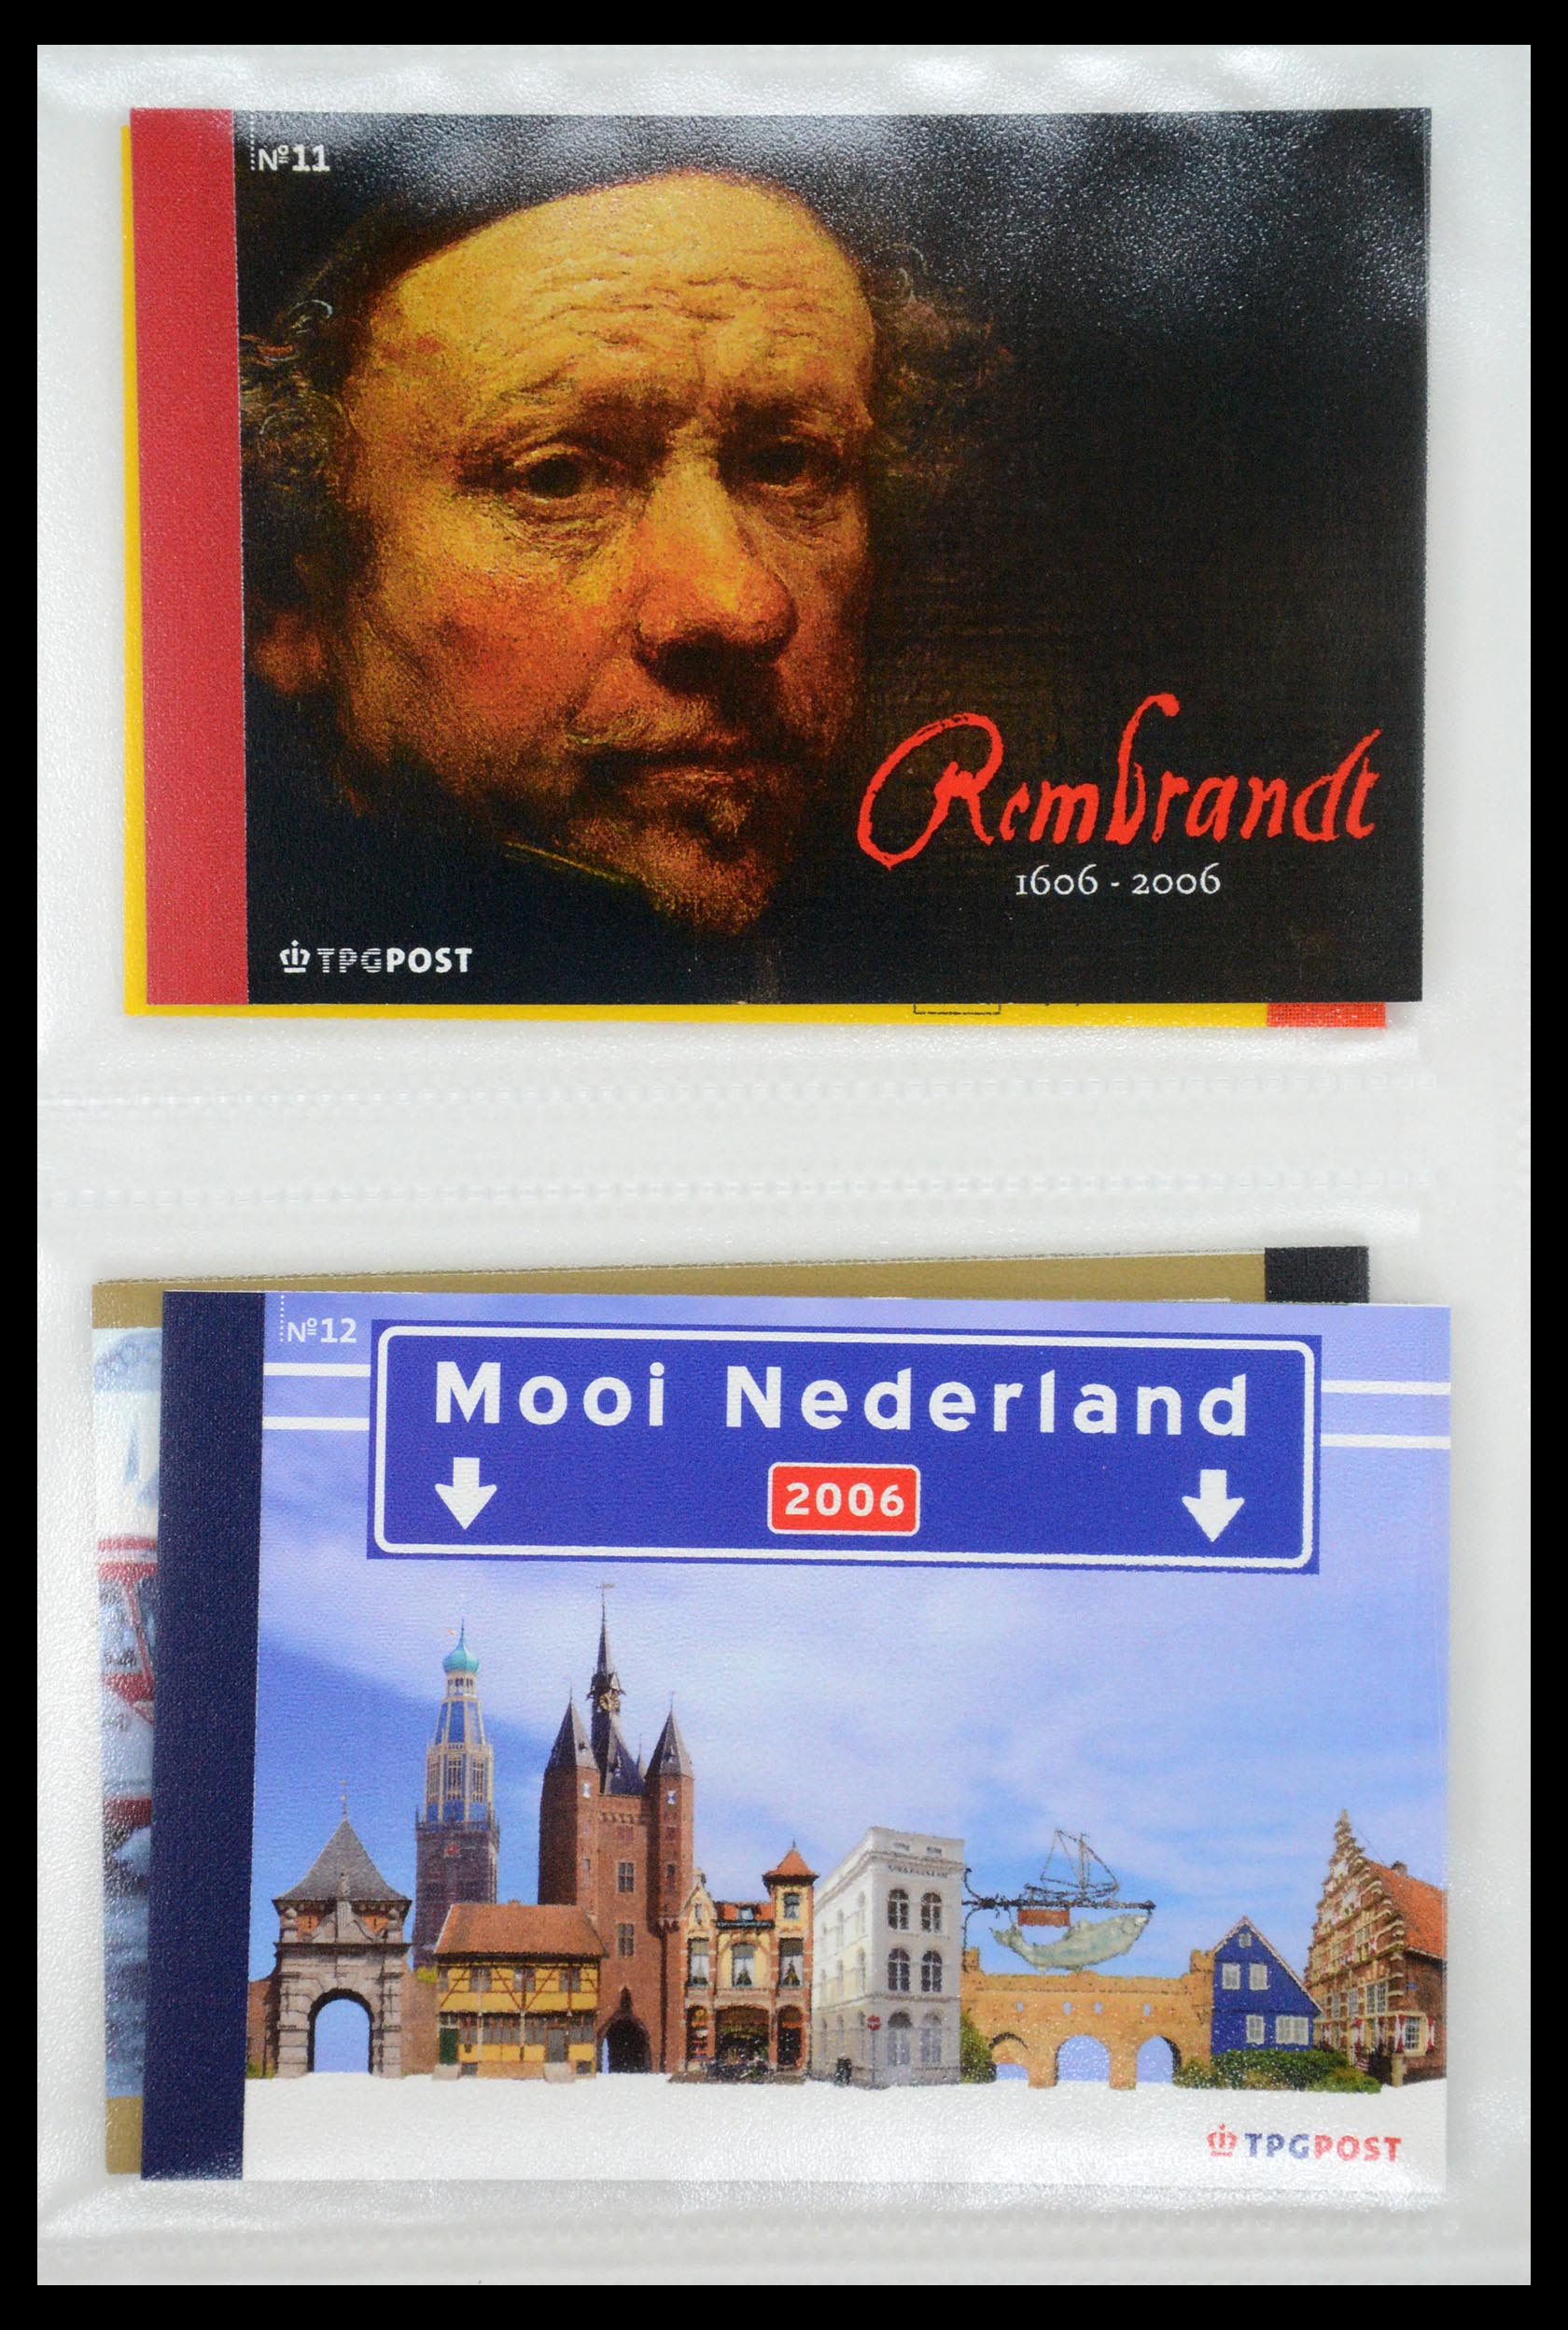 35148 005 - Stamp Collection 35148 Netherlands prestige booklets 2003-2019.